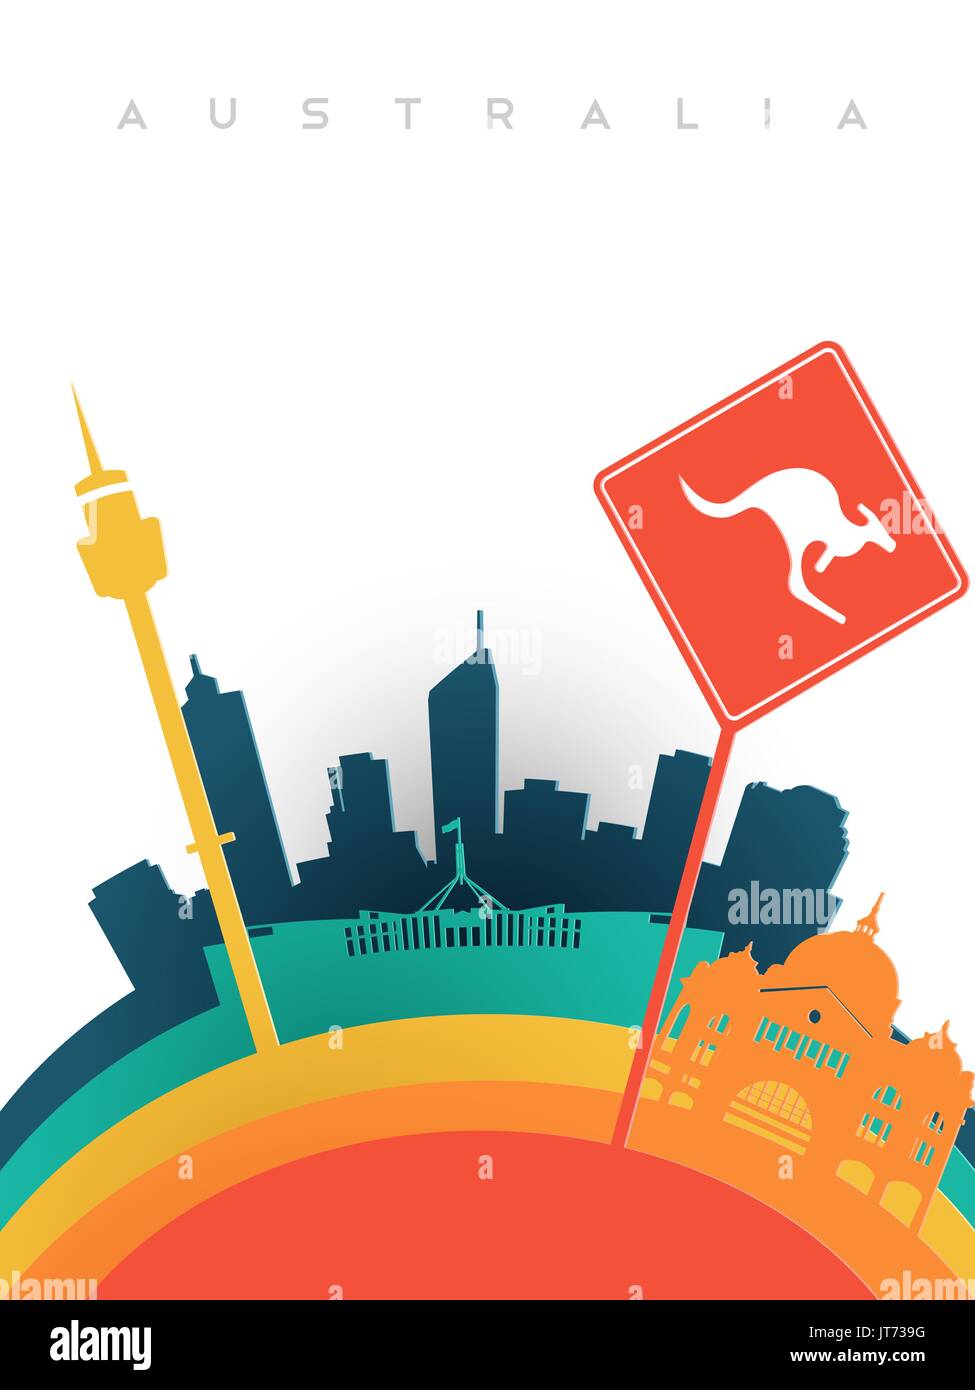 Viajar Australia ilustración en 3D estilo de corte de papel, hitos del mundo de Australia. Incluye Sydney Tower, signo de canguro, estación de tren de Melbourne. EPS1 Ilustración del Vector